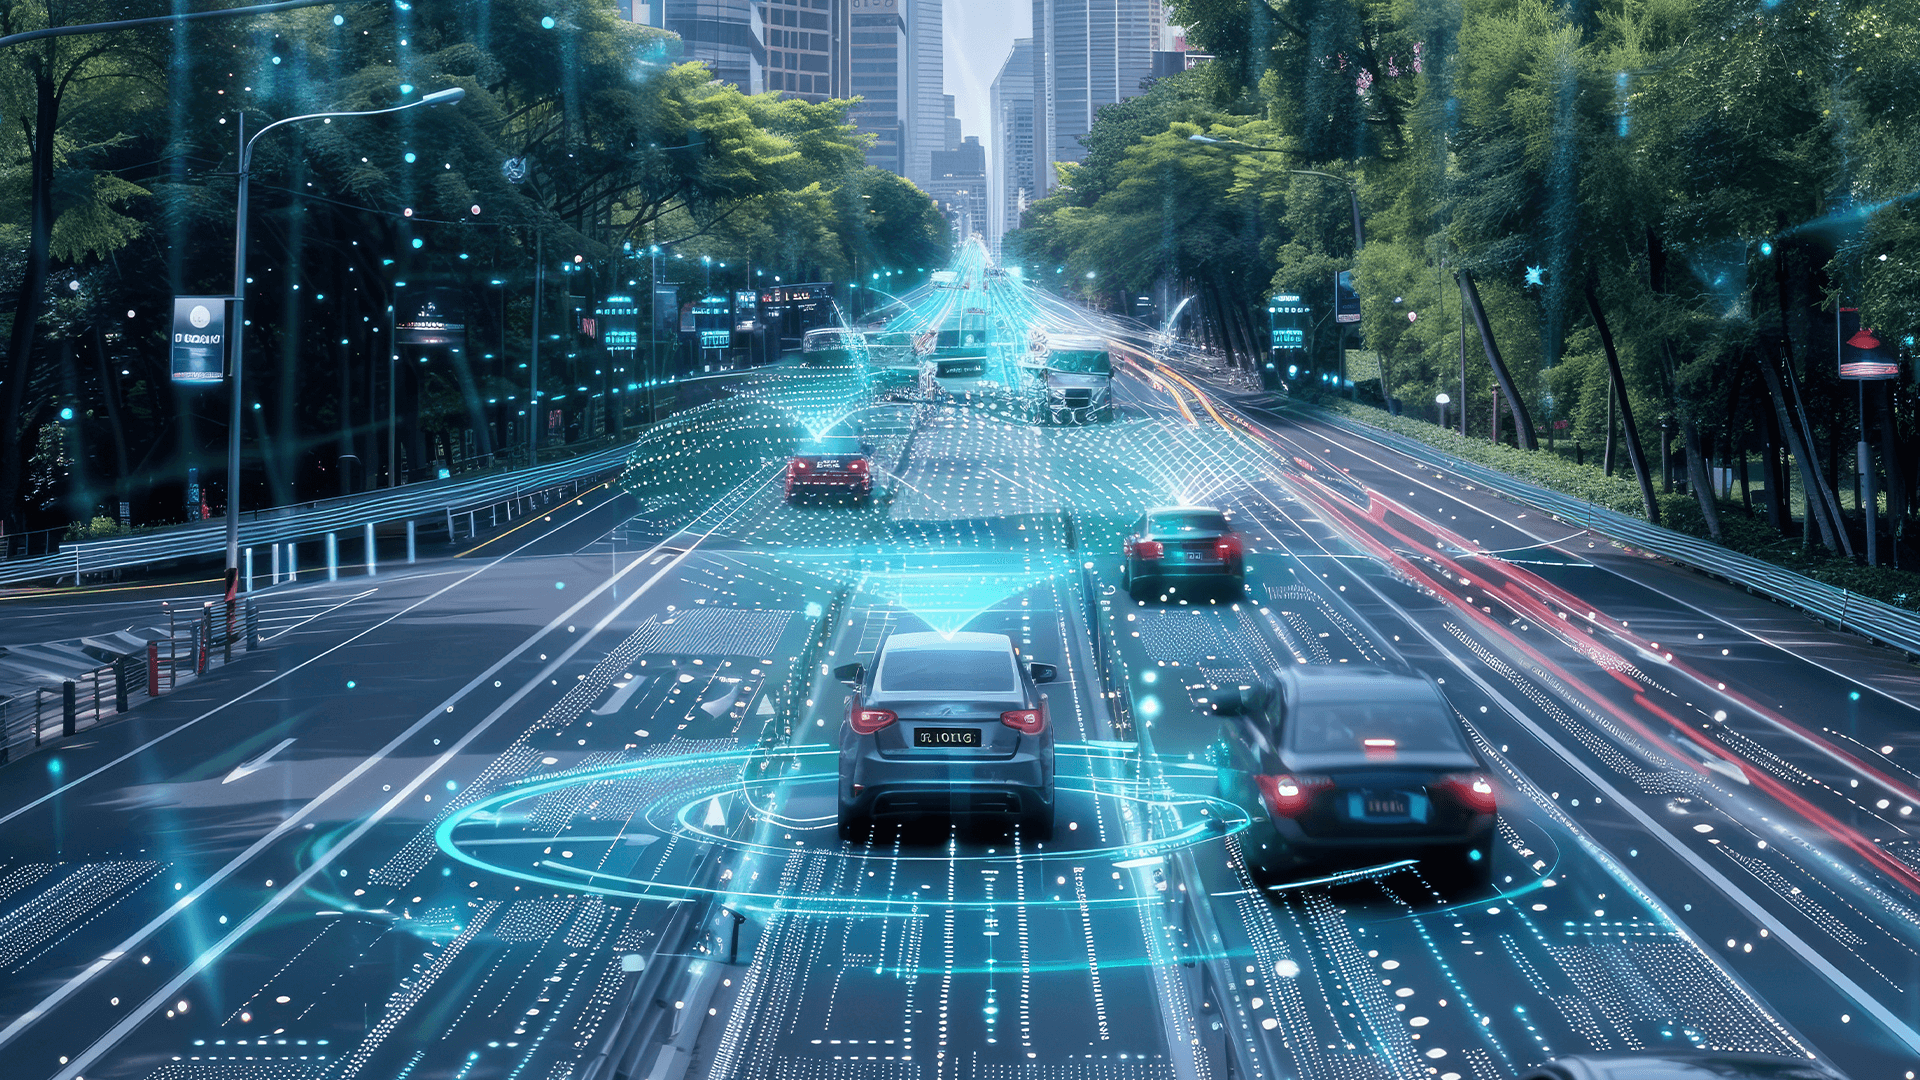 Carros conectados, simbolizando a importância das cidades inteligentes, tema abordado no artigo da Luby.